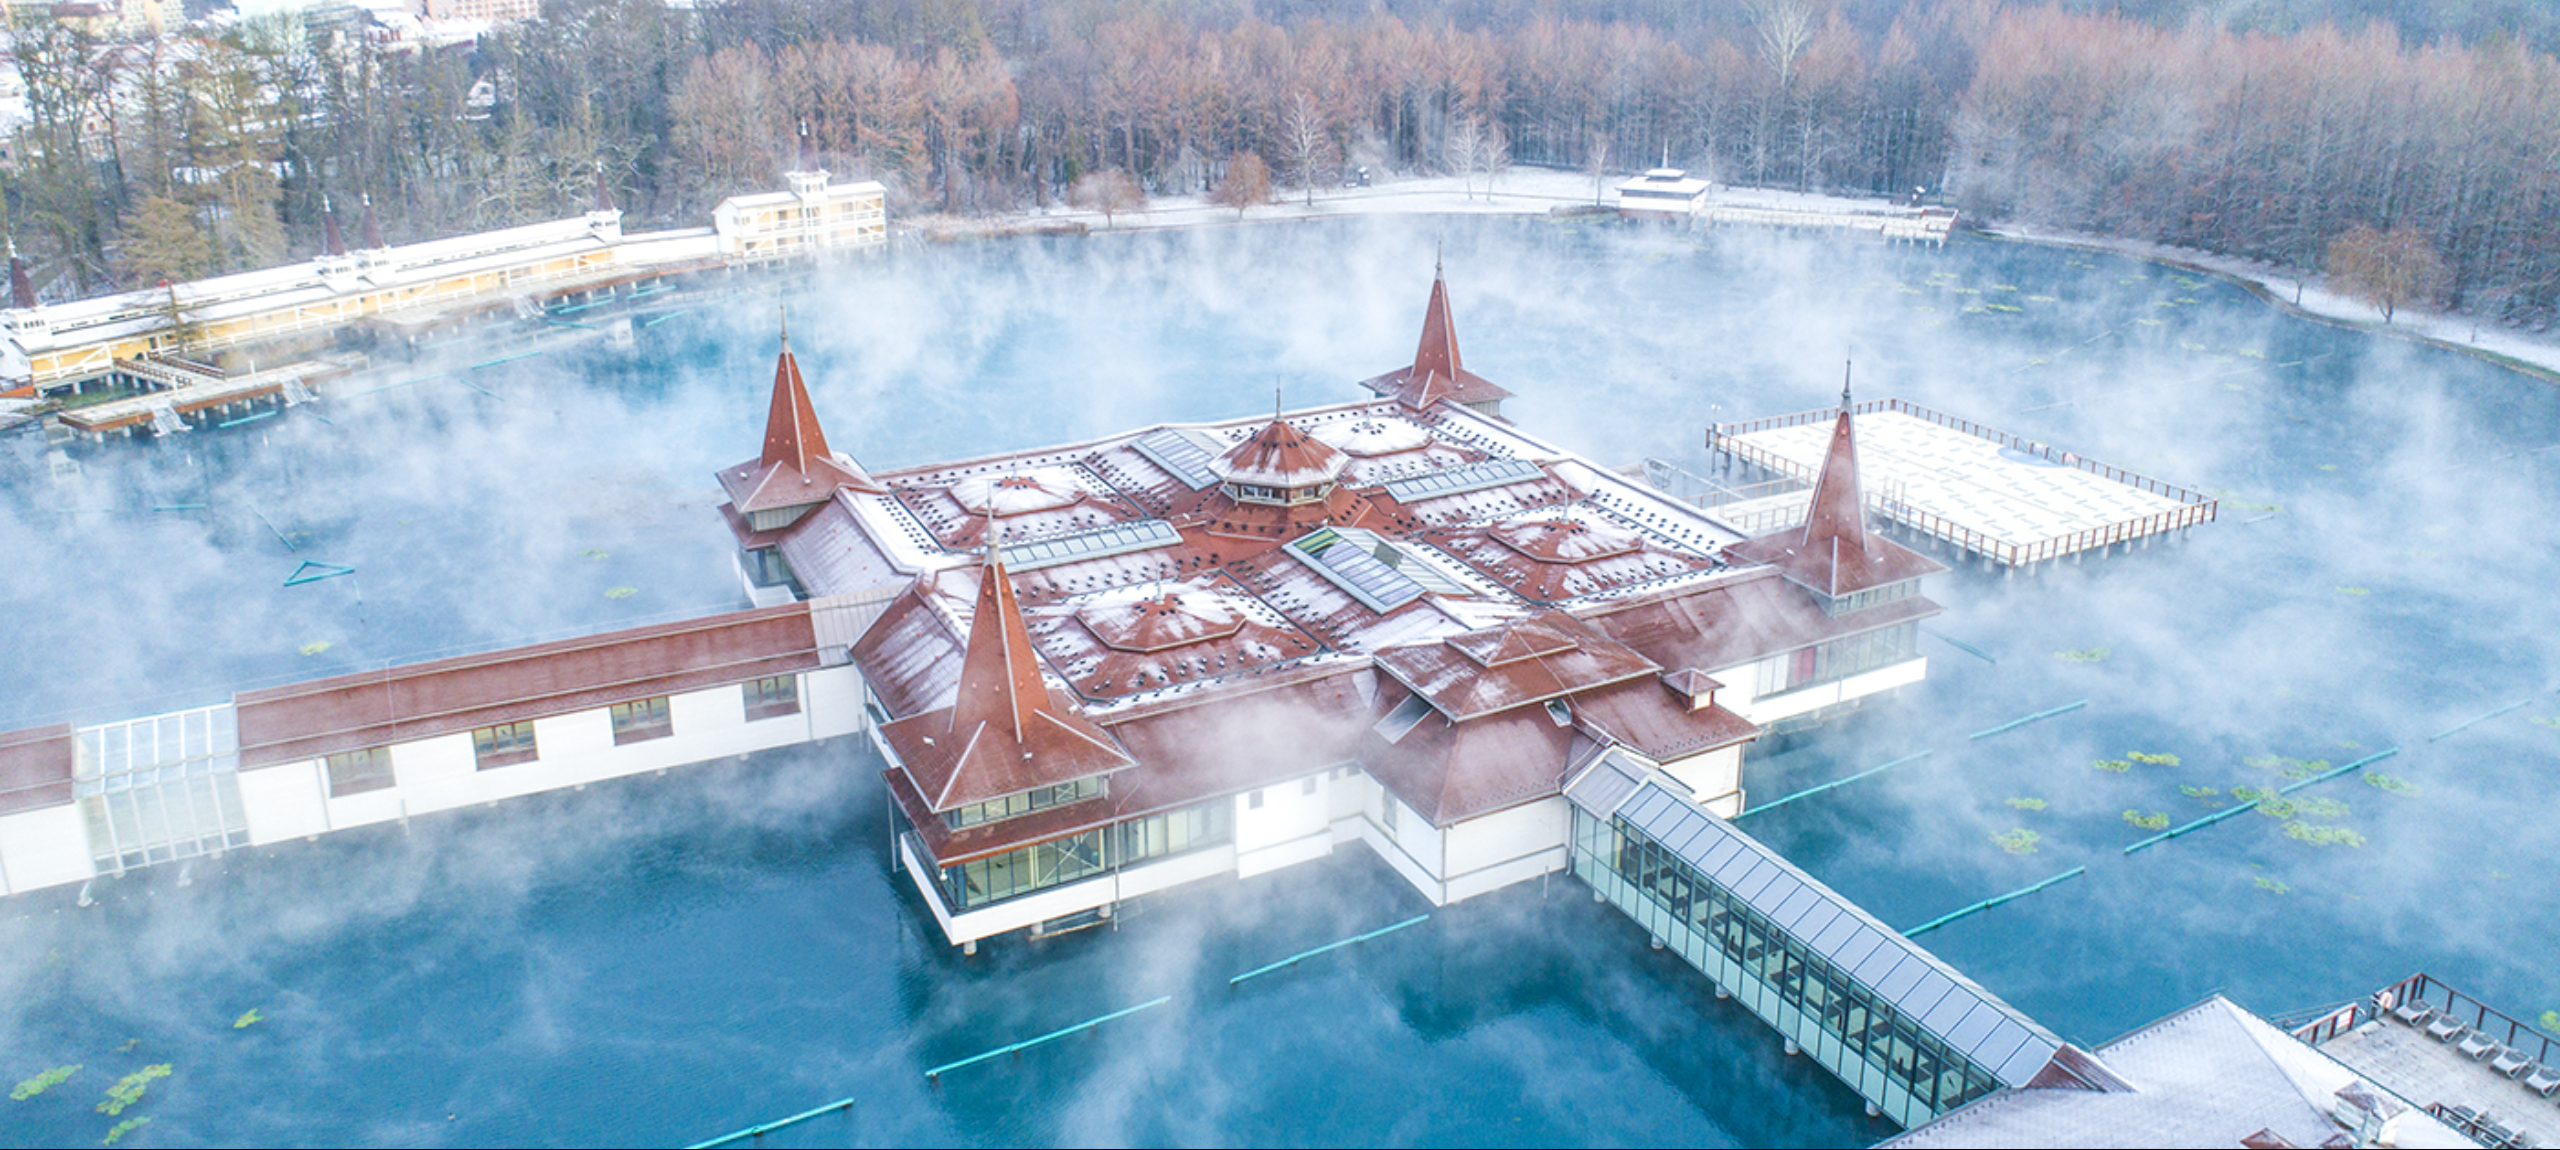 Hévíz - Hunguest Hotel Panoráma - Téli kényeztető feltöltődés Hévízen Tófürdő belépővel